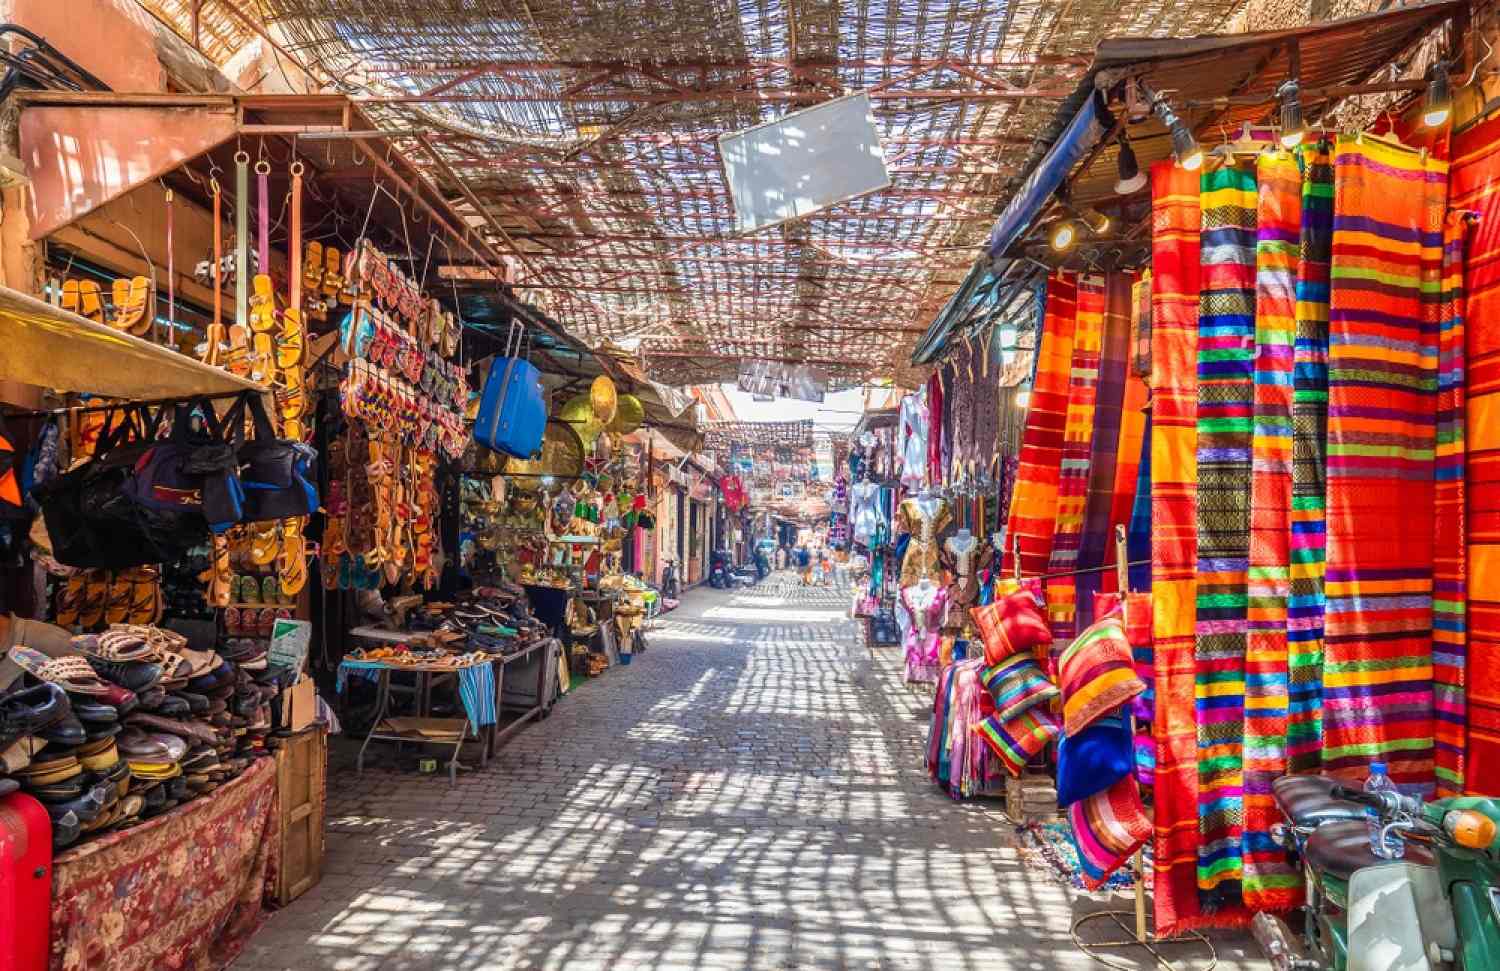 Day 1: Marrakech to Ouarzazate